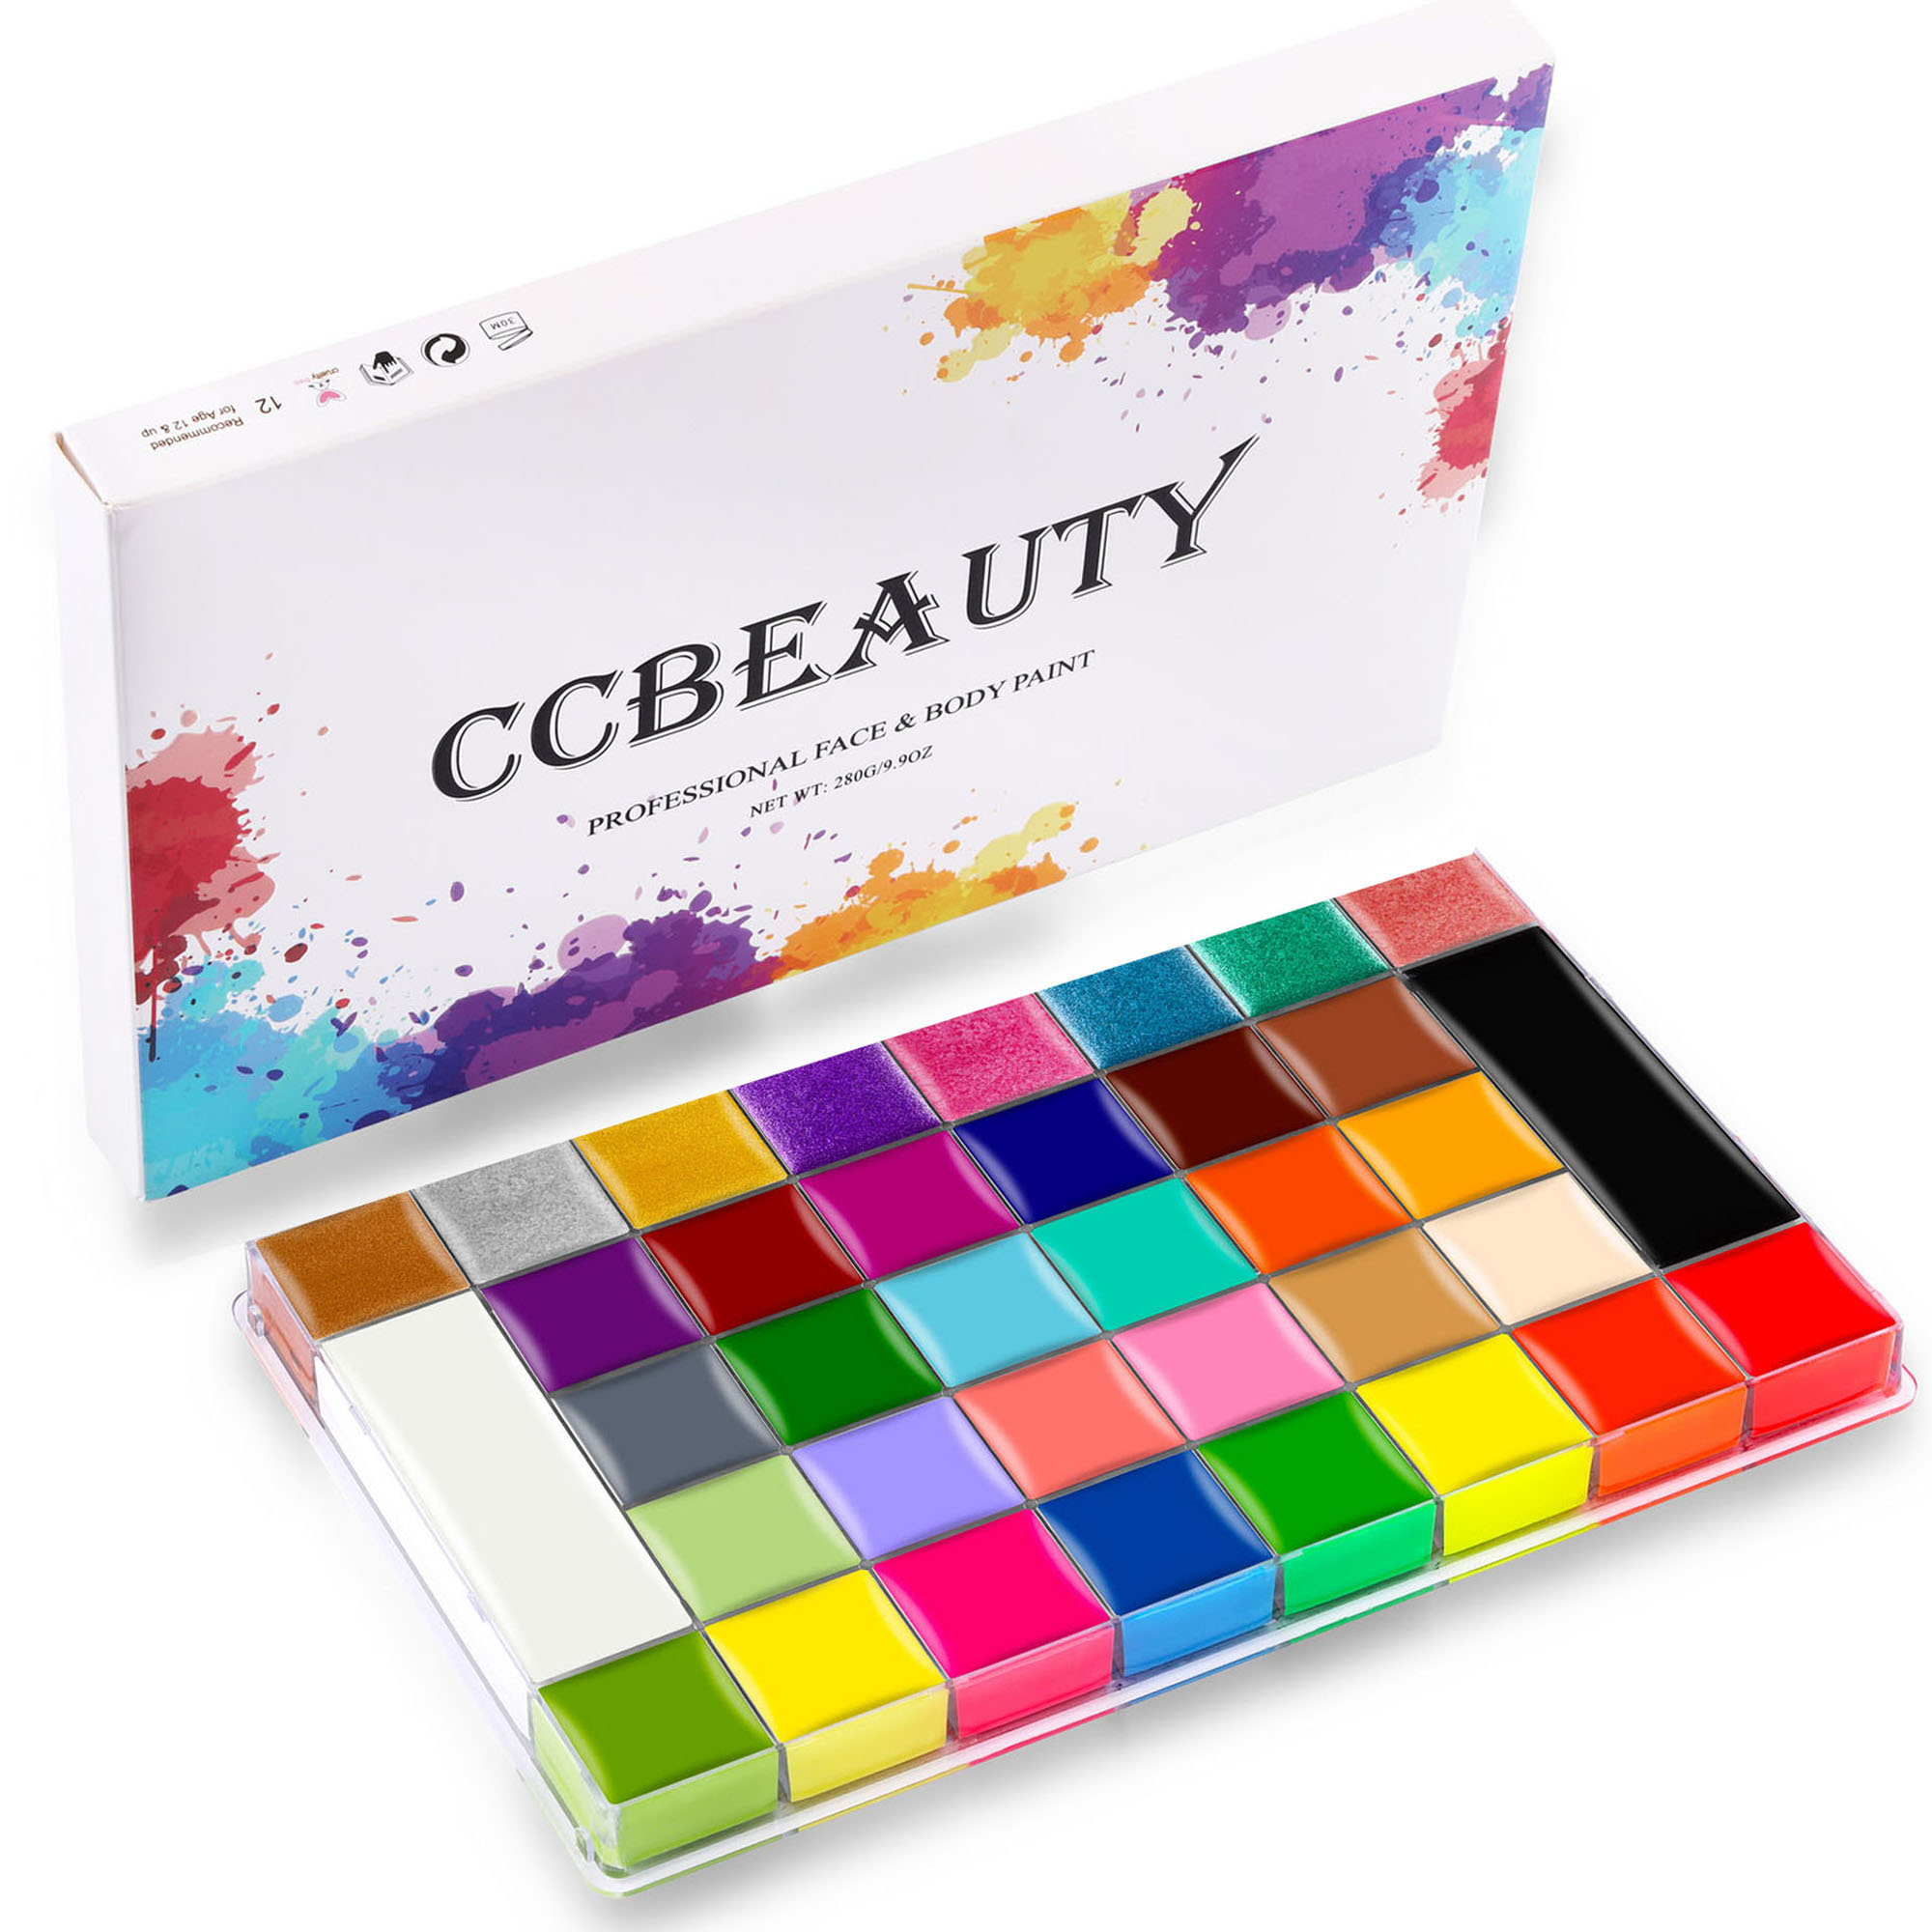 CCbeauty Professional 36 Colors Face Body Paint Palette, 10OZ